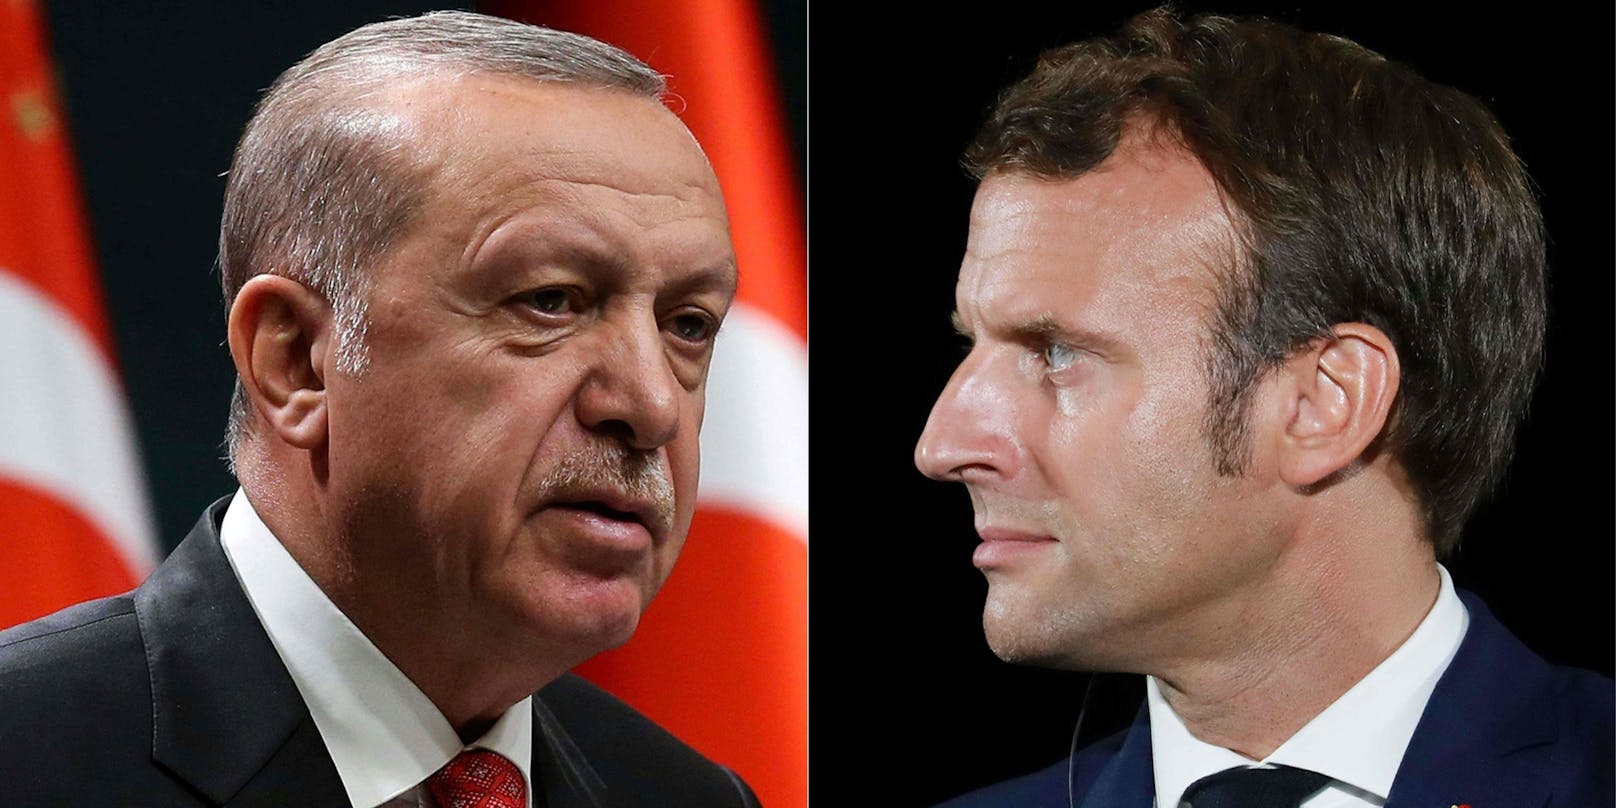 Recep Tayyip Erdogan (links) sagte, Emmanuel Macron gehöre in psychologische Behandlung.